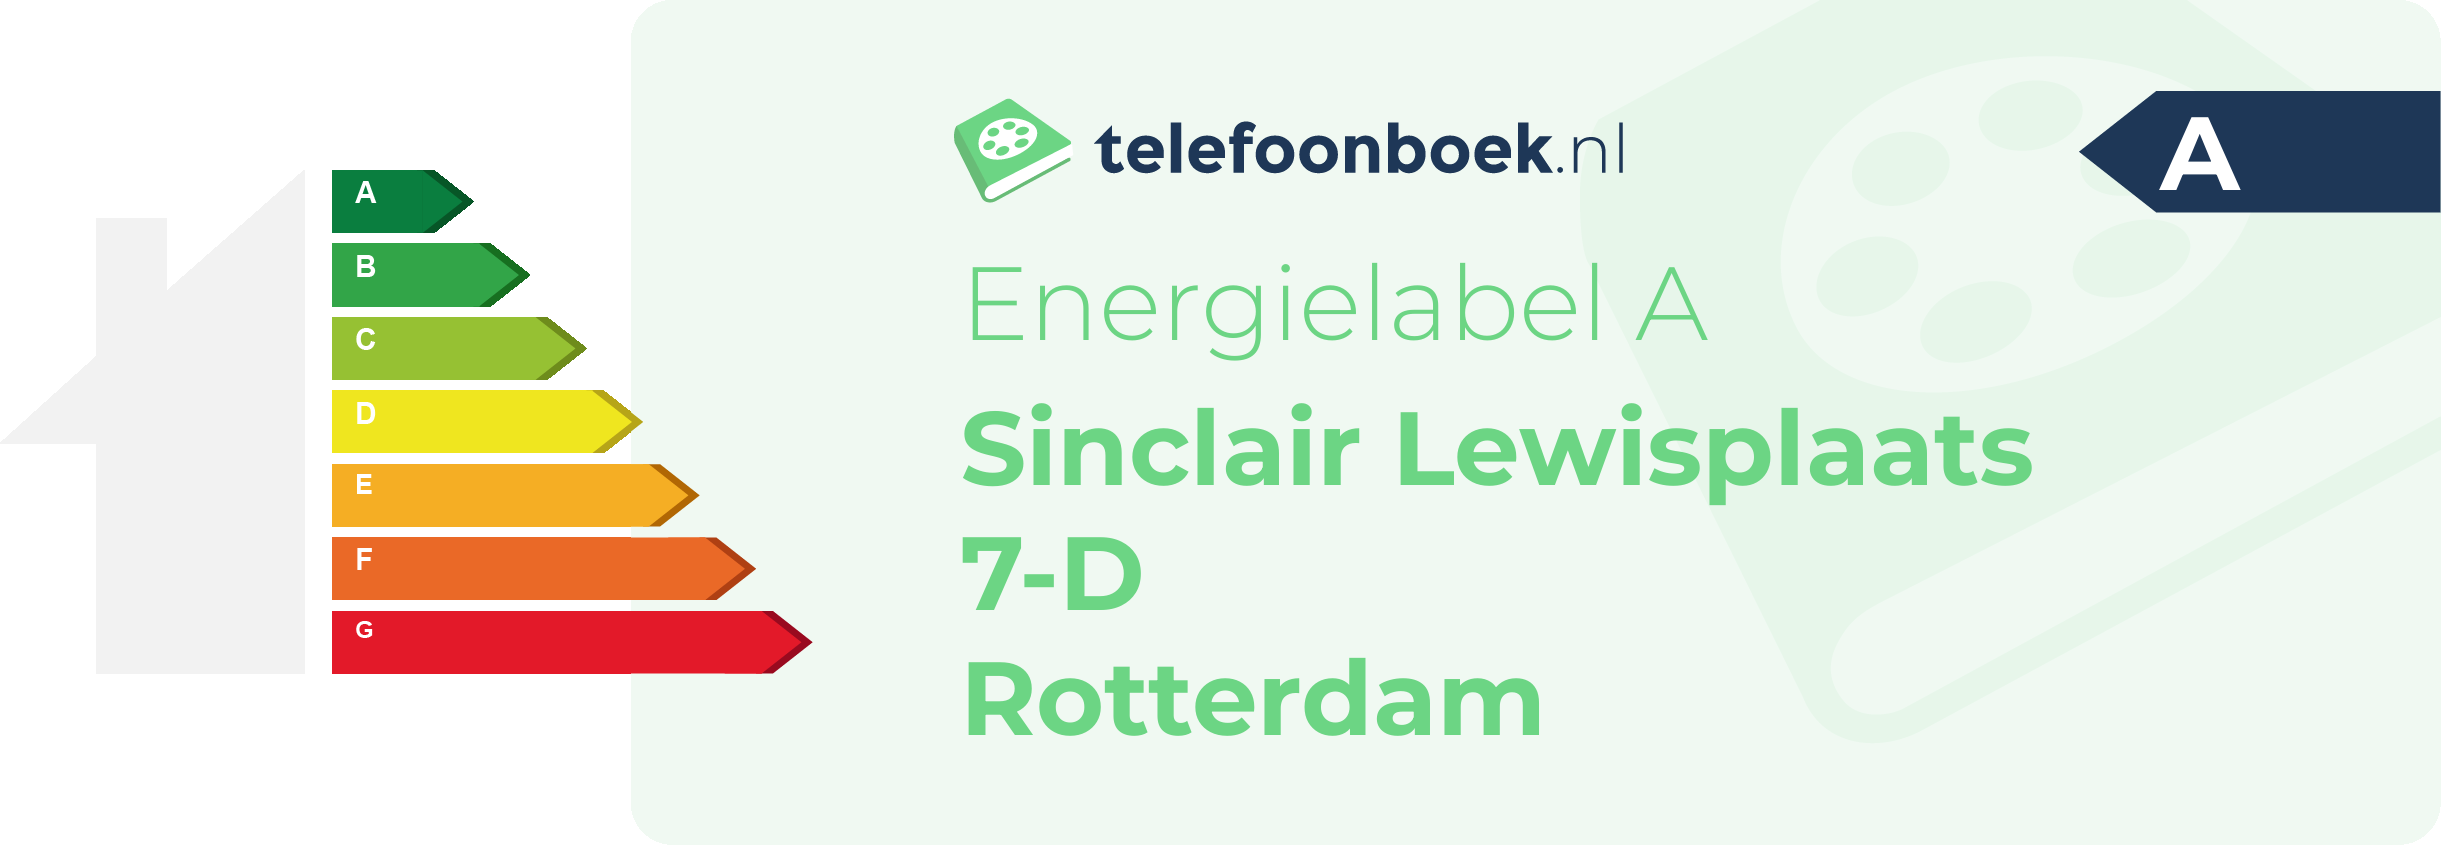 Energielabel Sinclair Lewisplaats 7-D Rotterdam